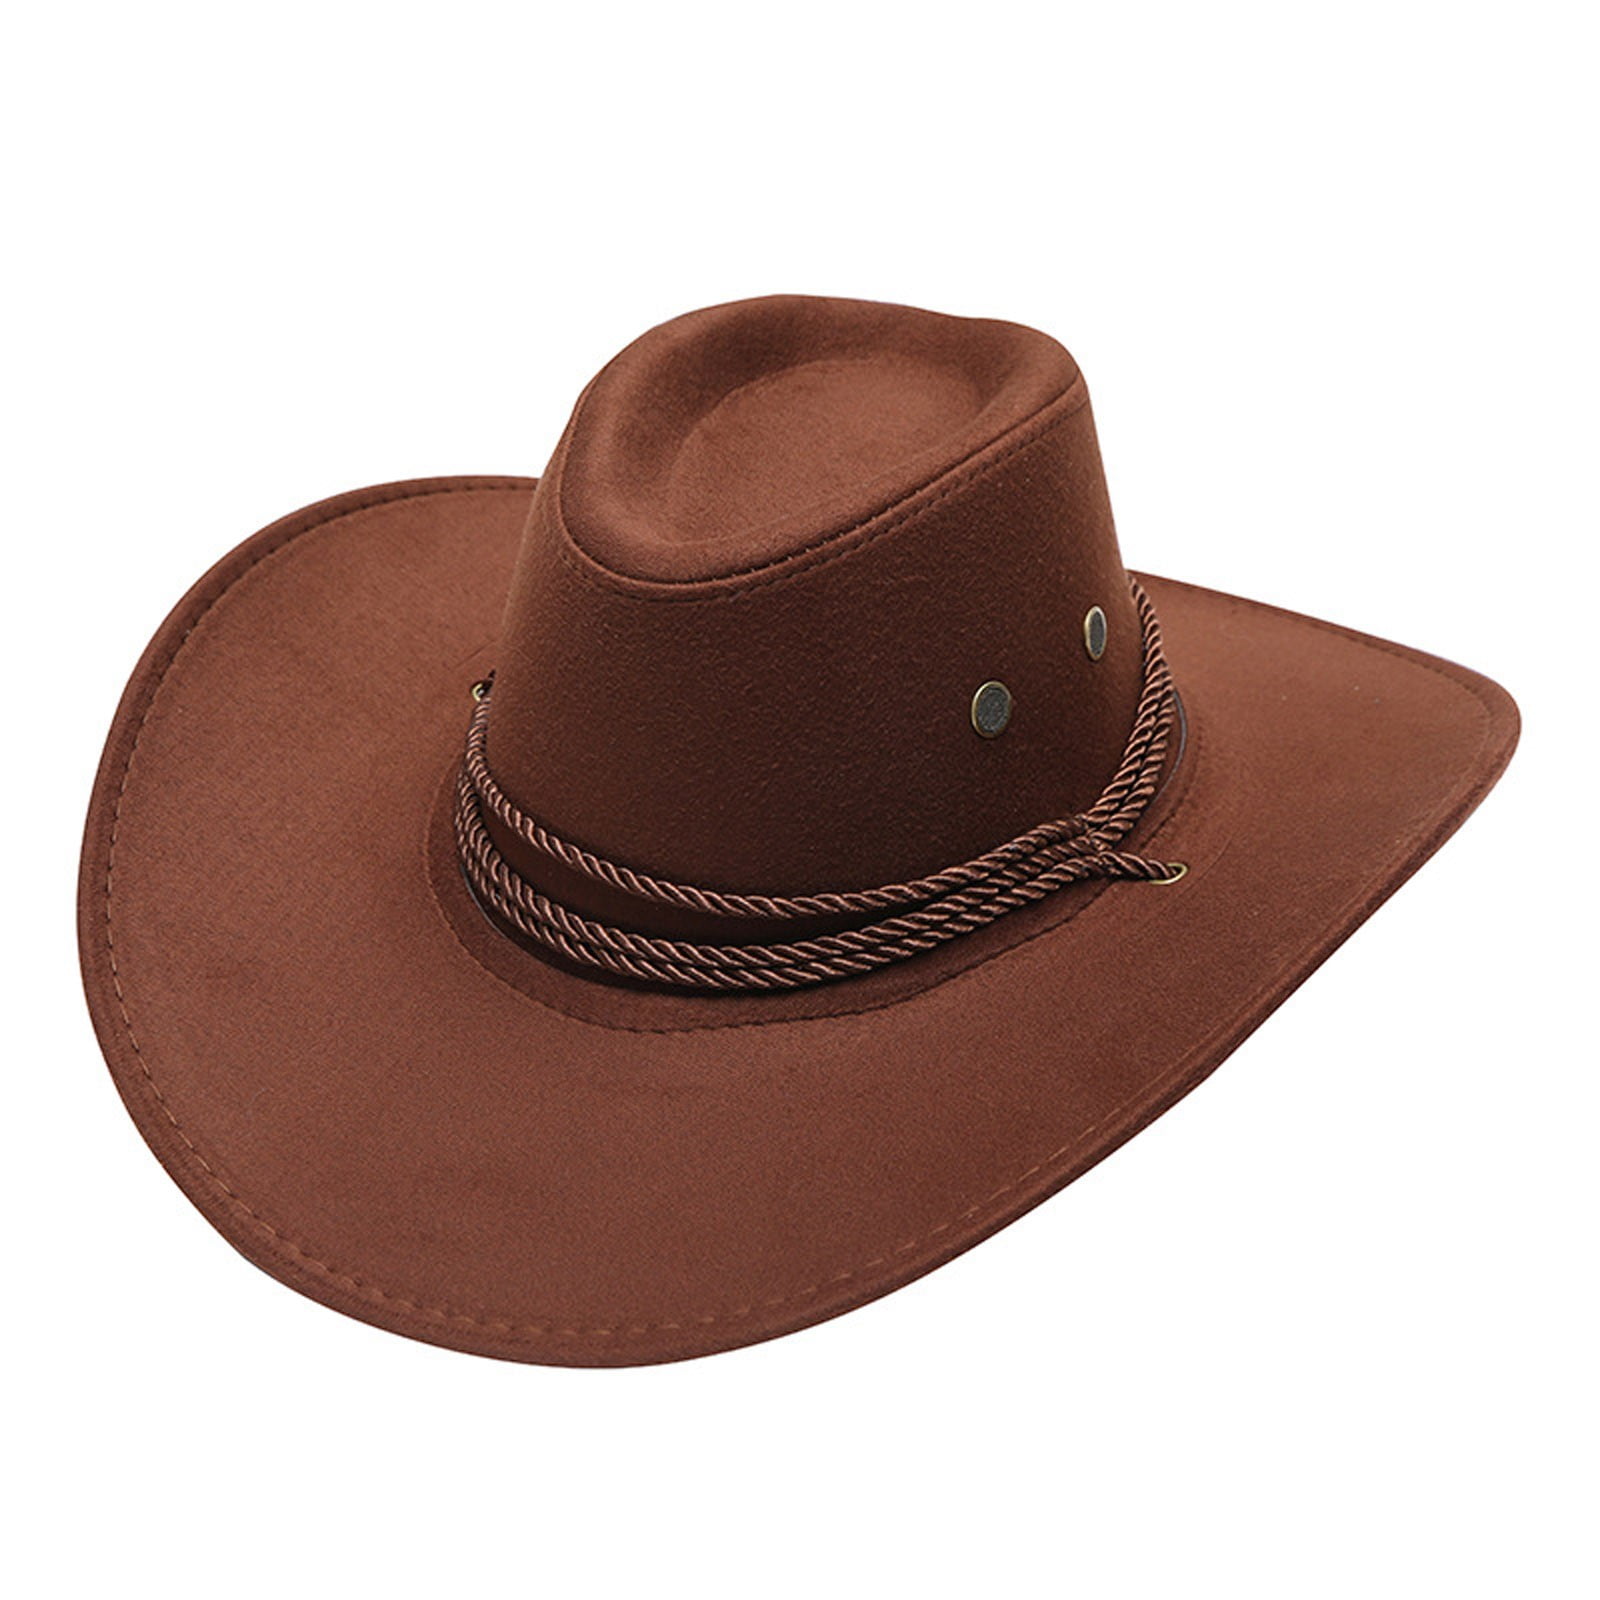 Kids Black Western Felt Hat, Cowboy Rodeo Kits Hat Sombrero Vaquero Texana  